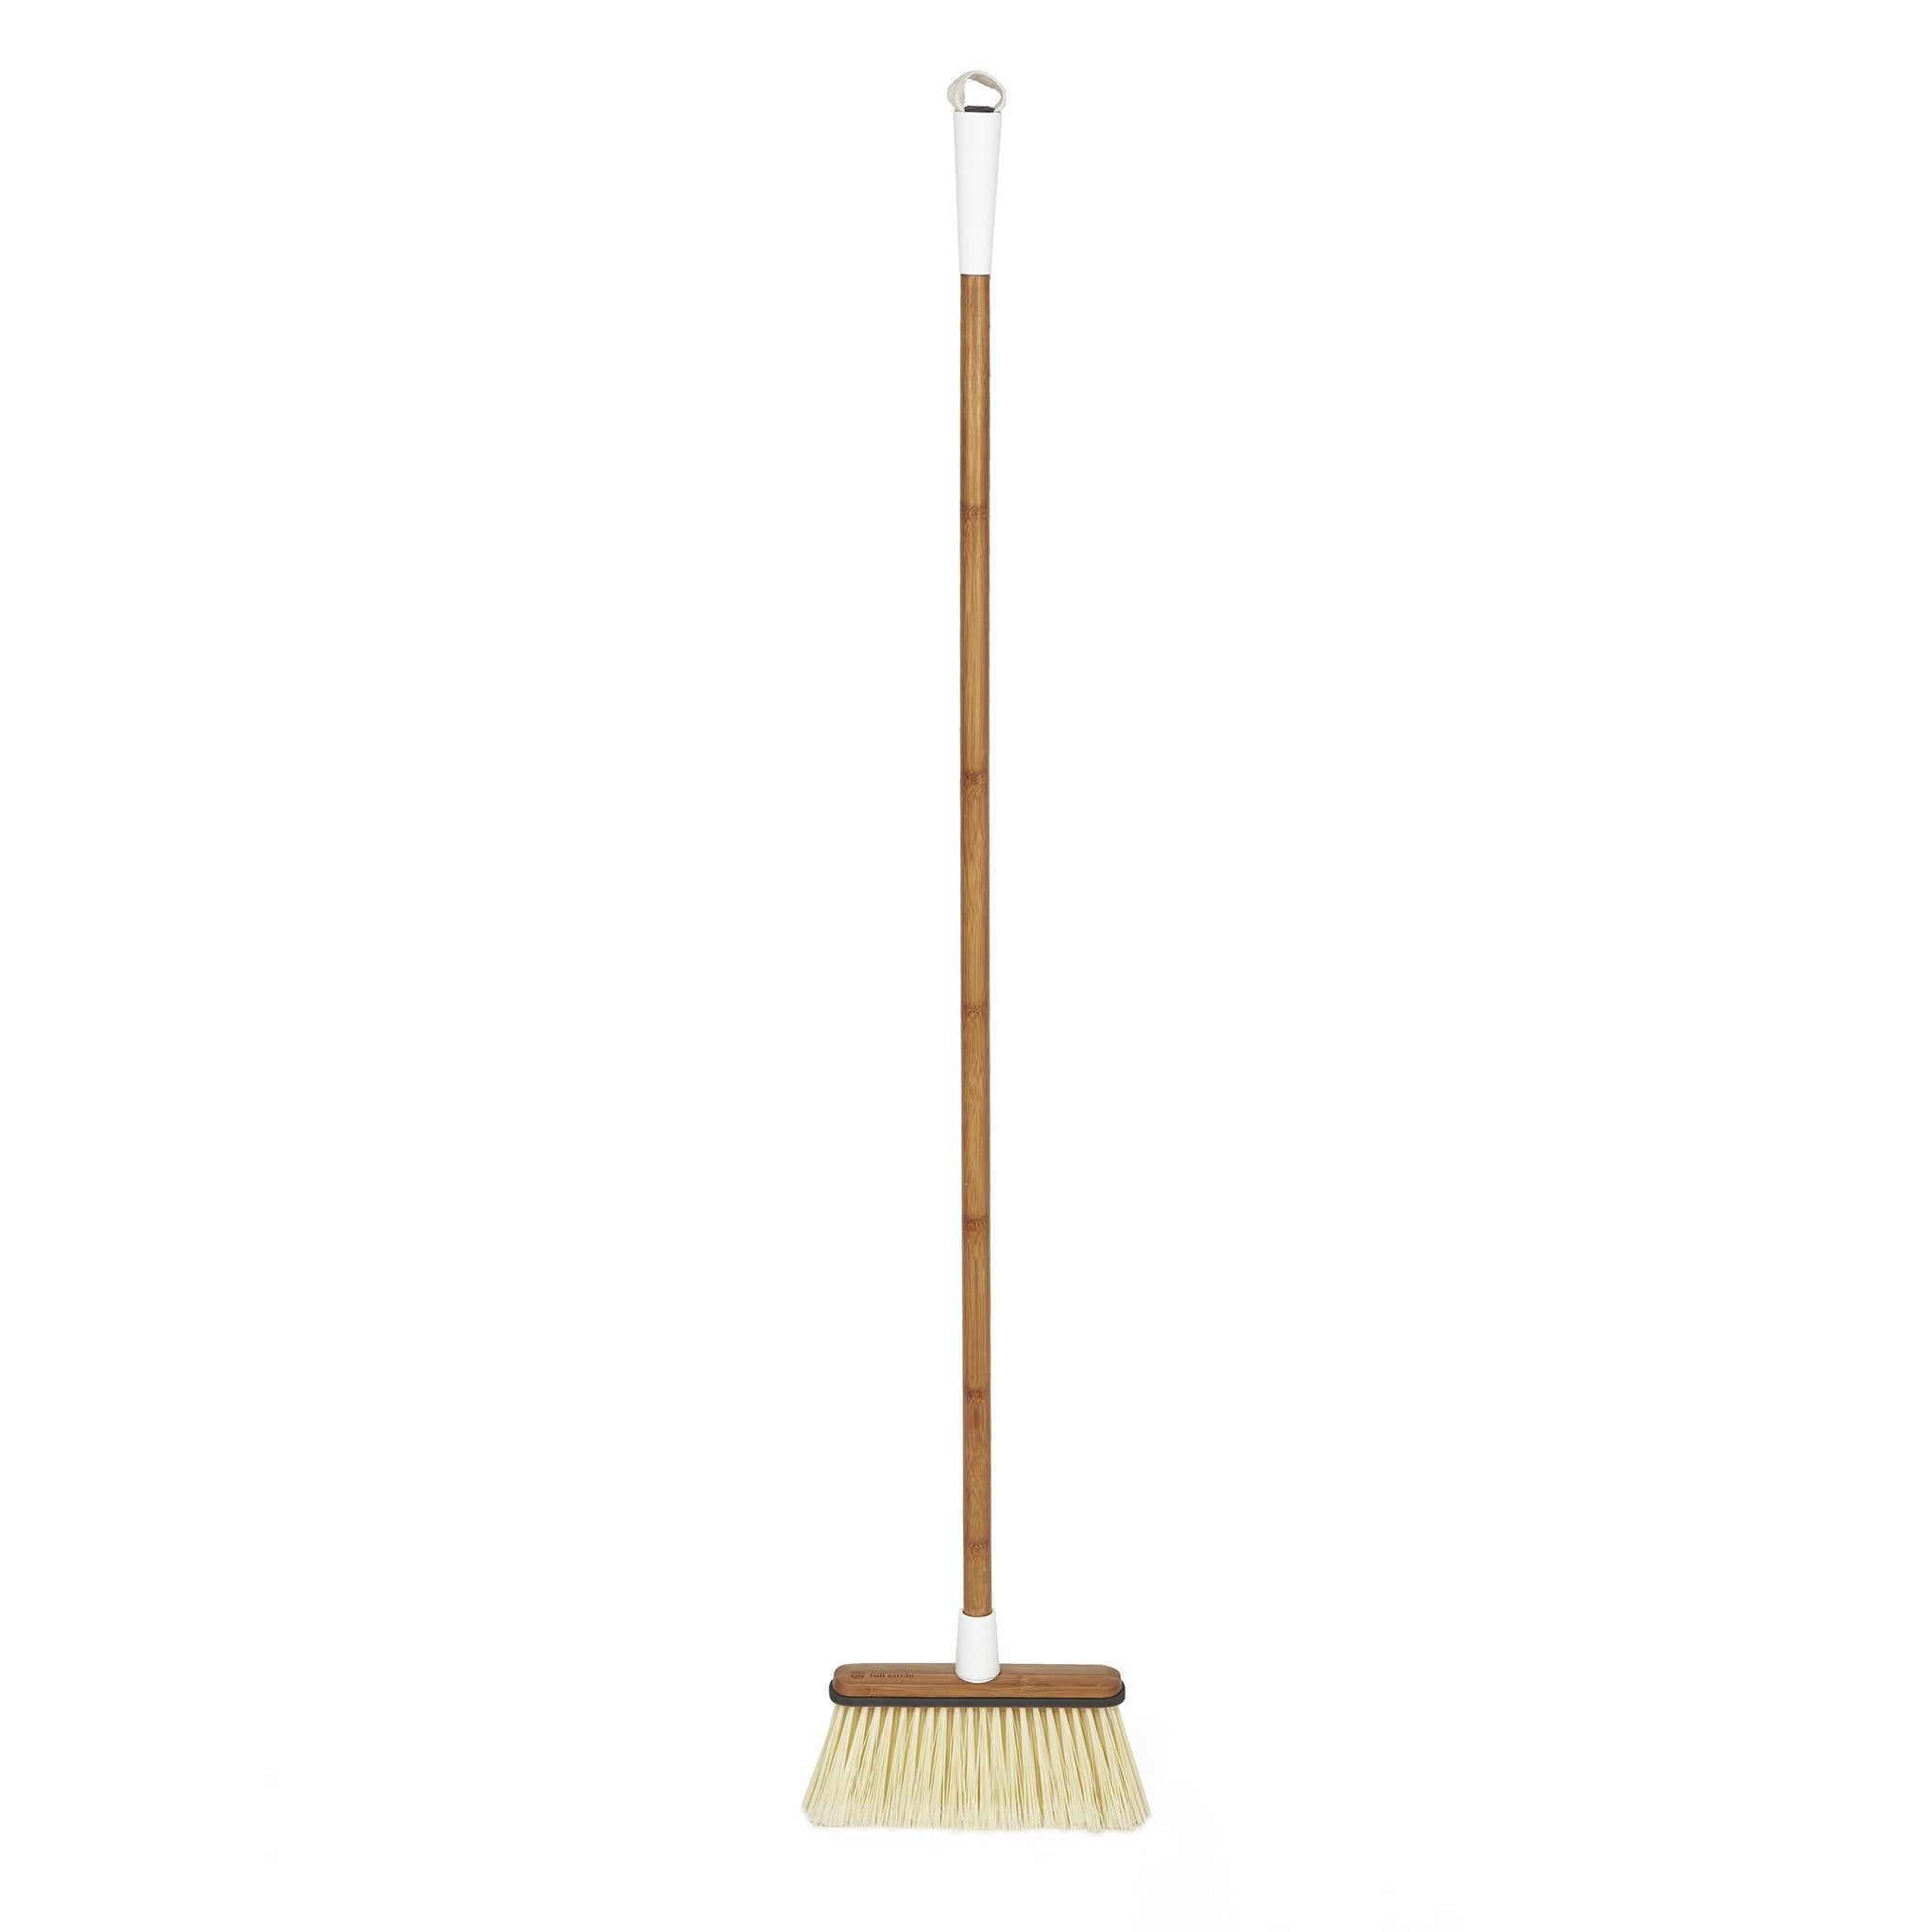 Clean Sweep Broom